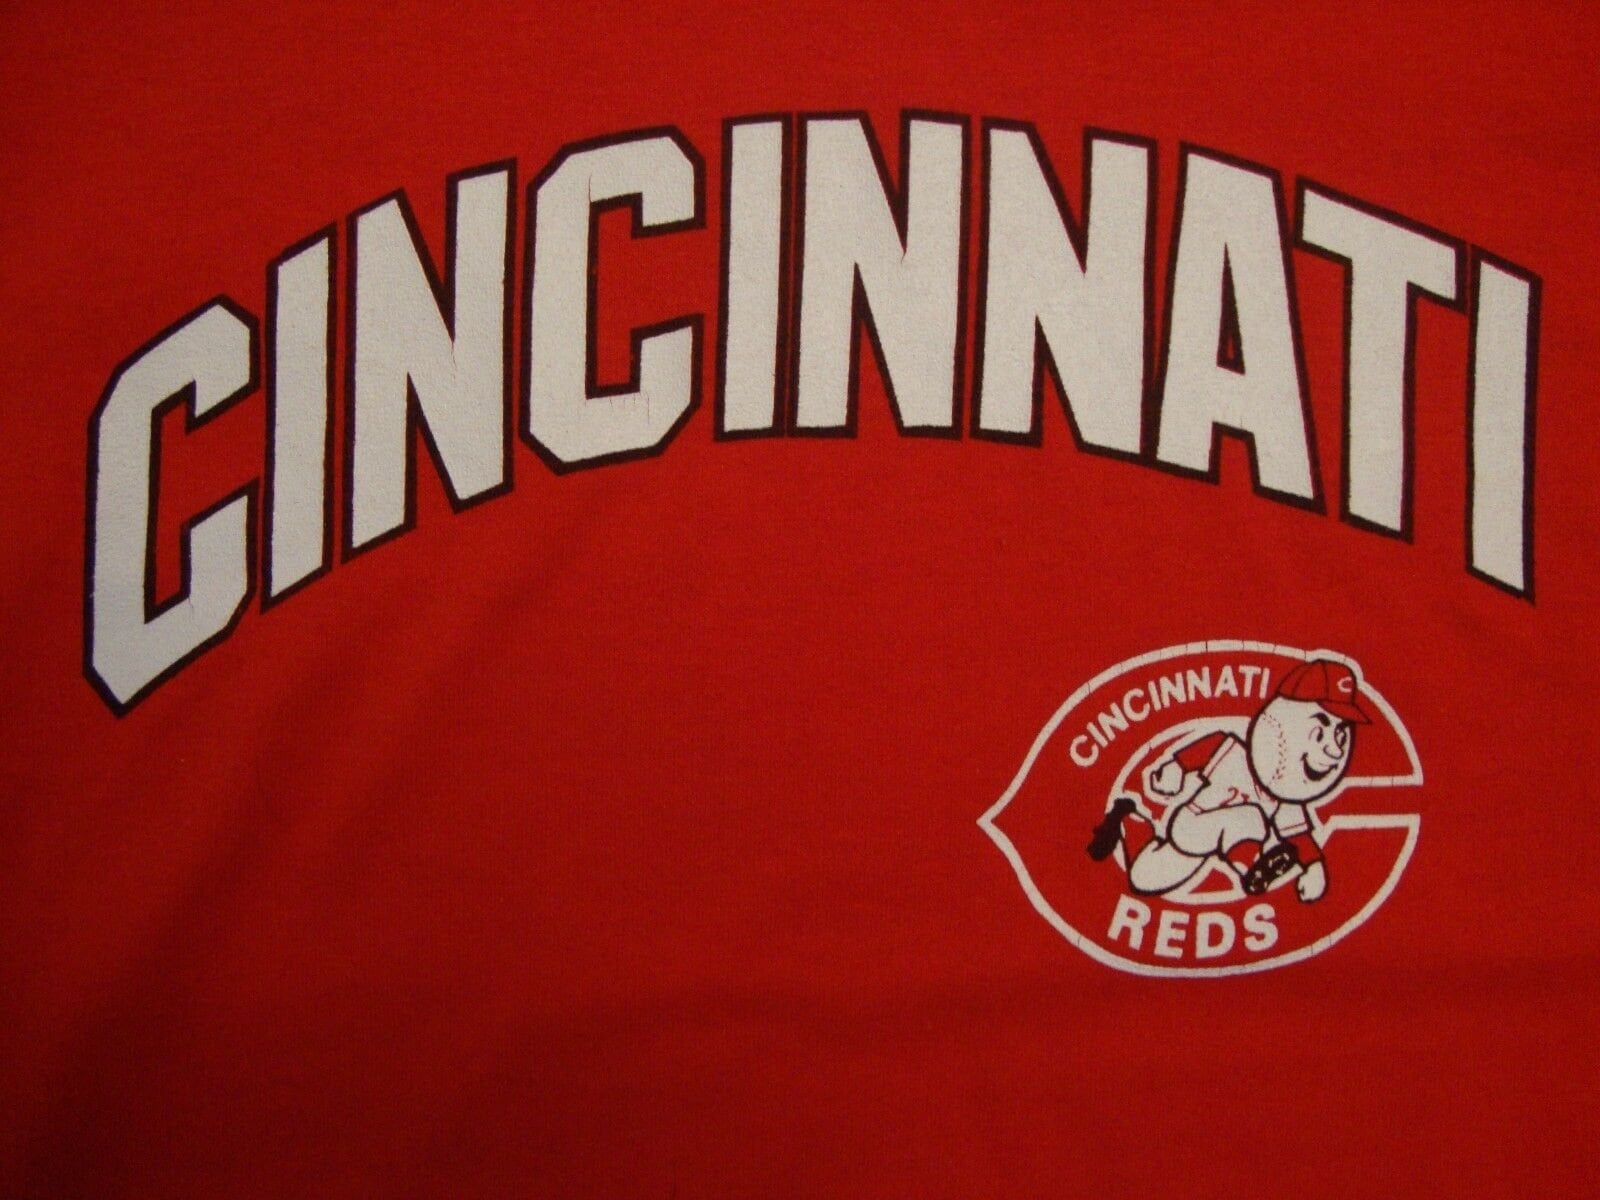 Vintage 80s Cincinnati Reds T Shirt Tee Baseball MLB Ohio OH 